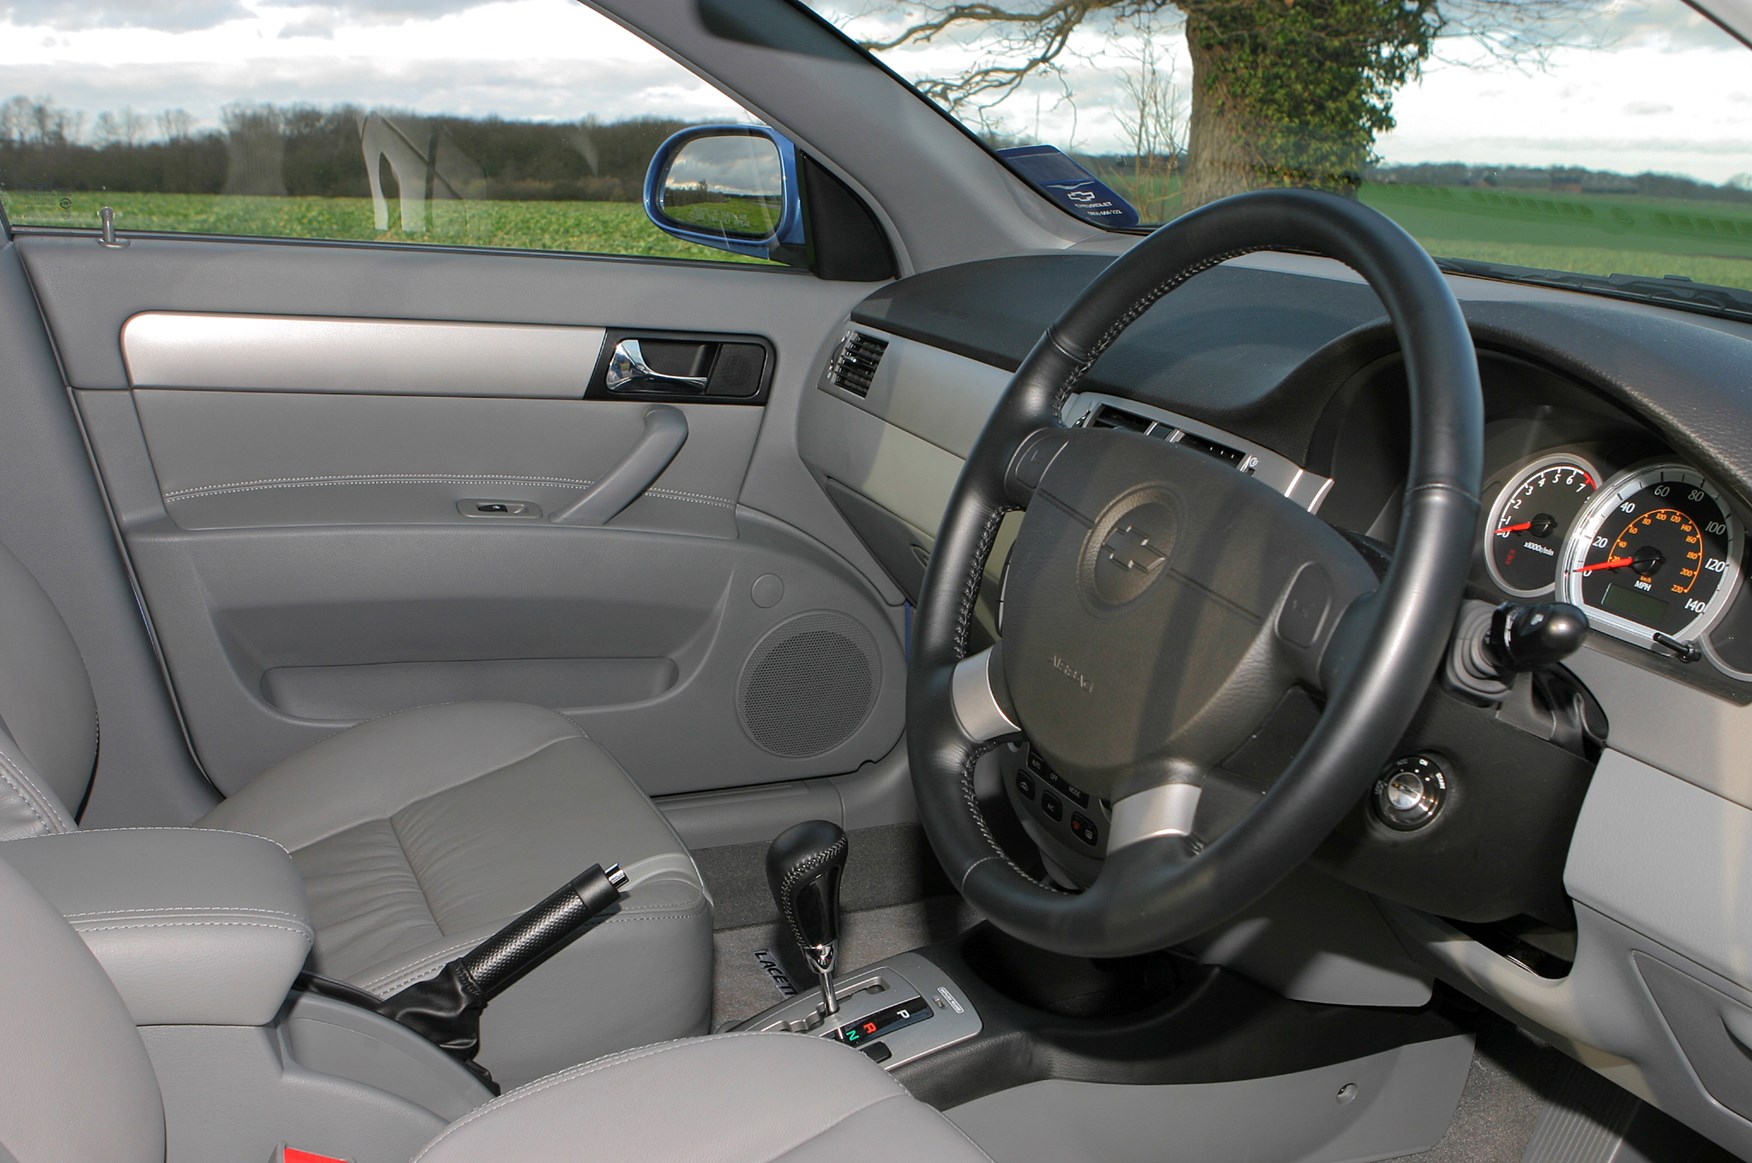 Chevrolet Lacetti 2006 Interior